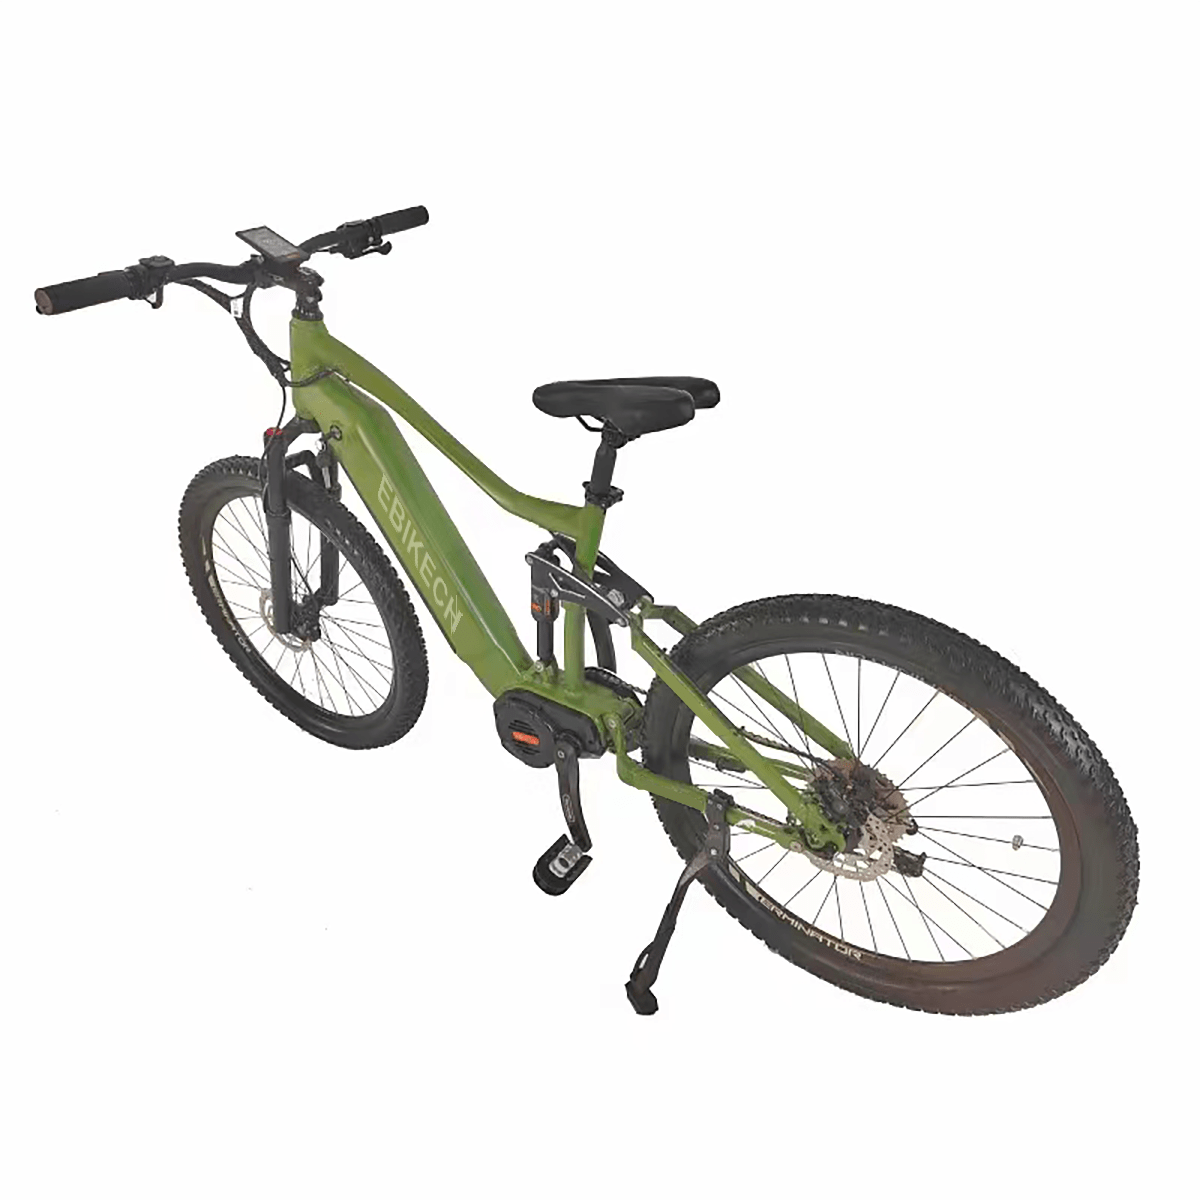 S4 electric mountain bike